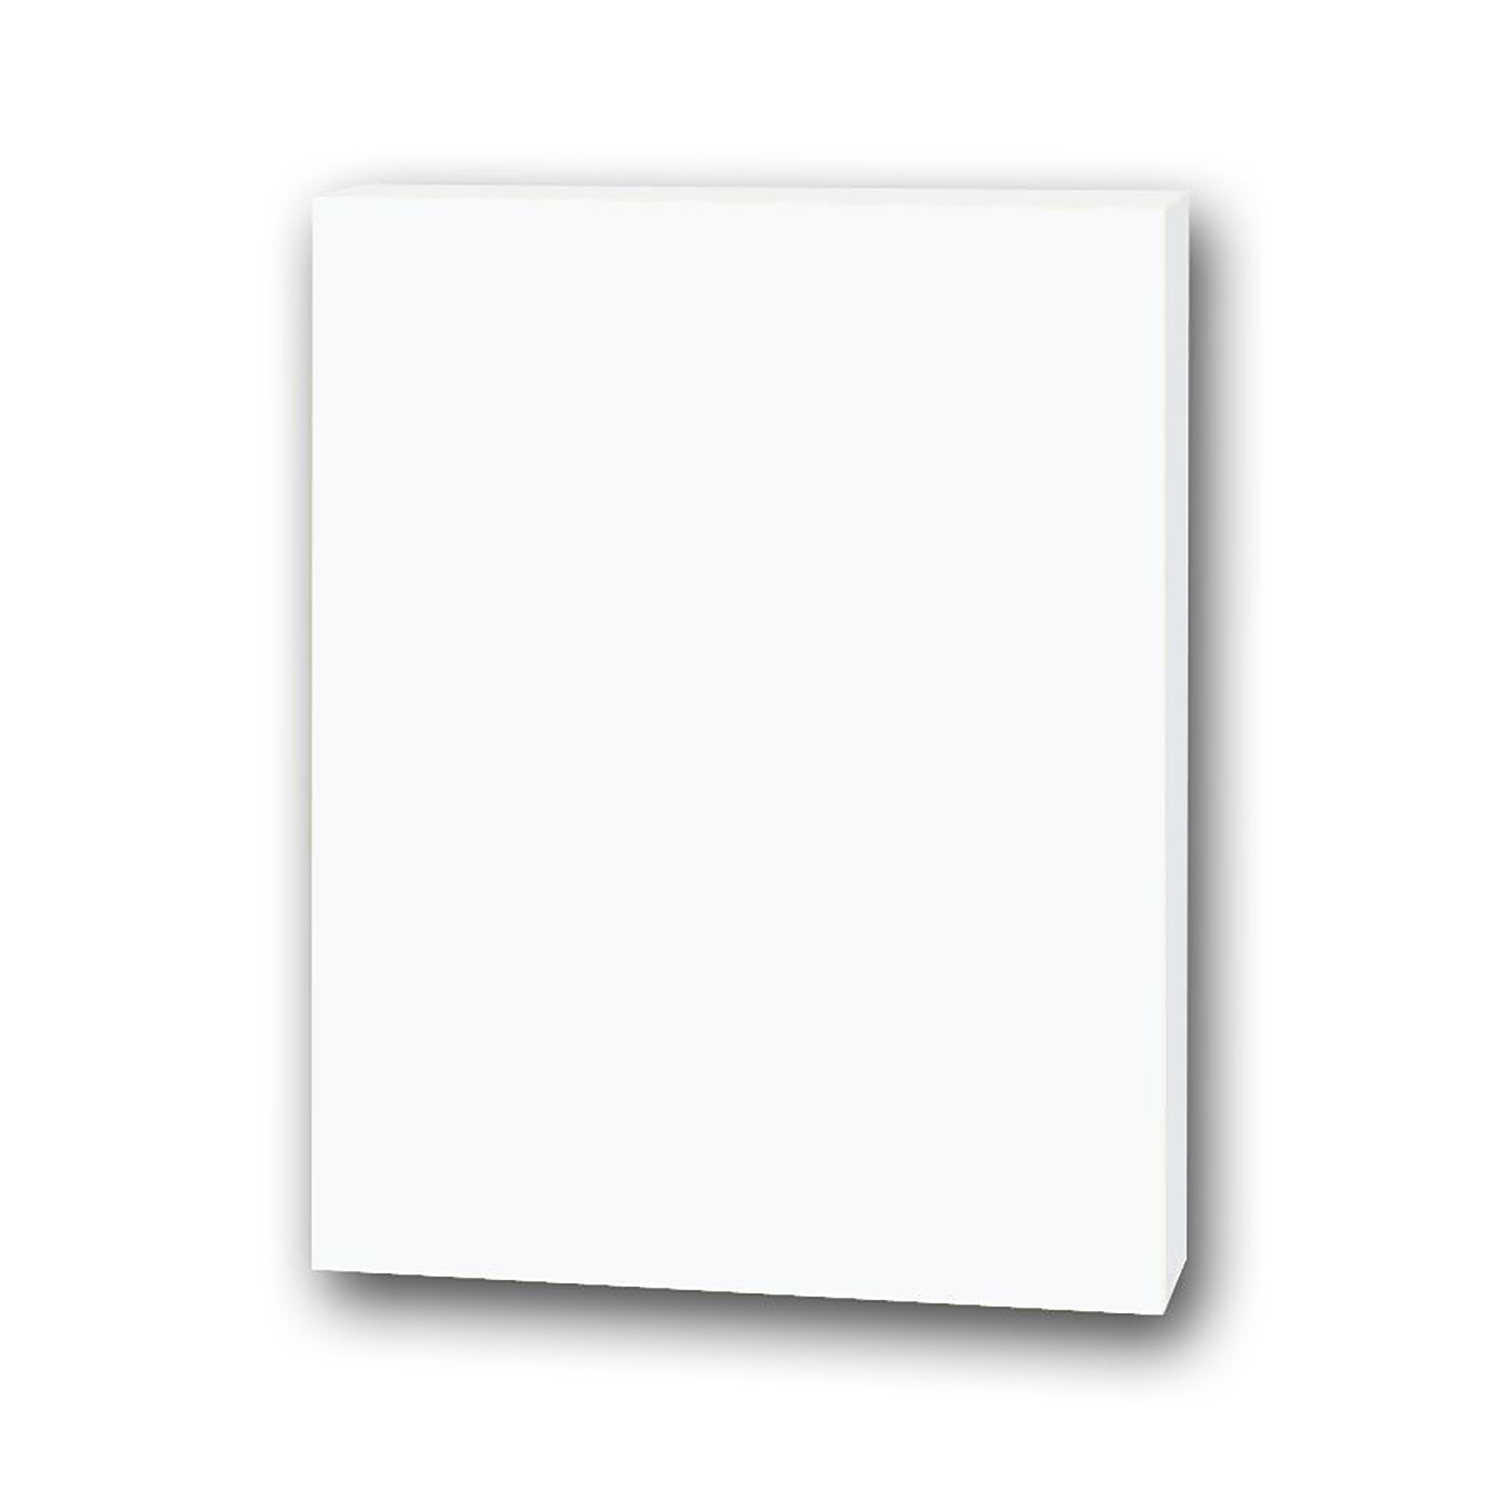 Foam Board, White, 22 x 28, 5 Sheets - PAC5557, Dixon Ticonderoga Co -  Pacon